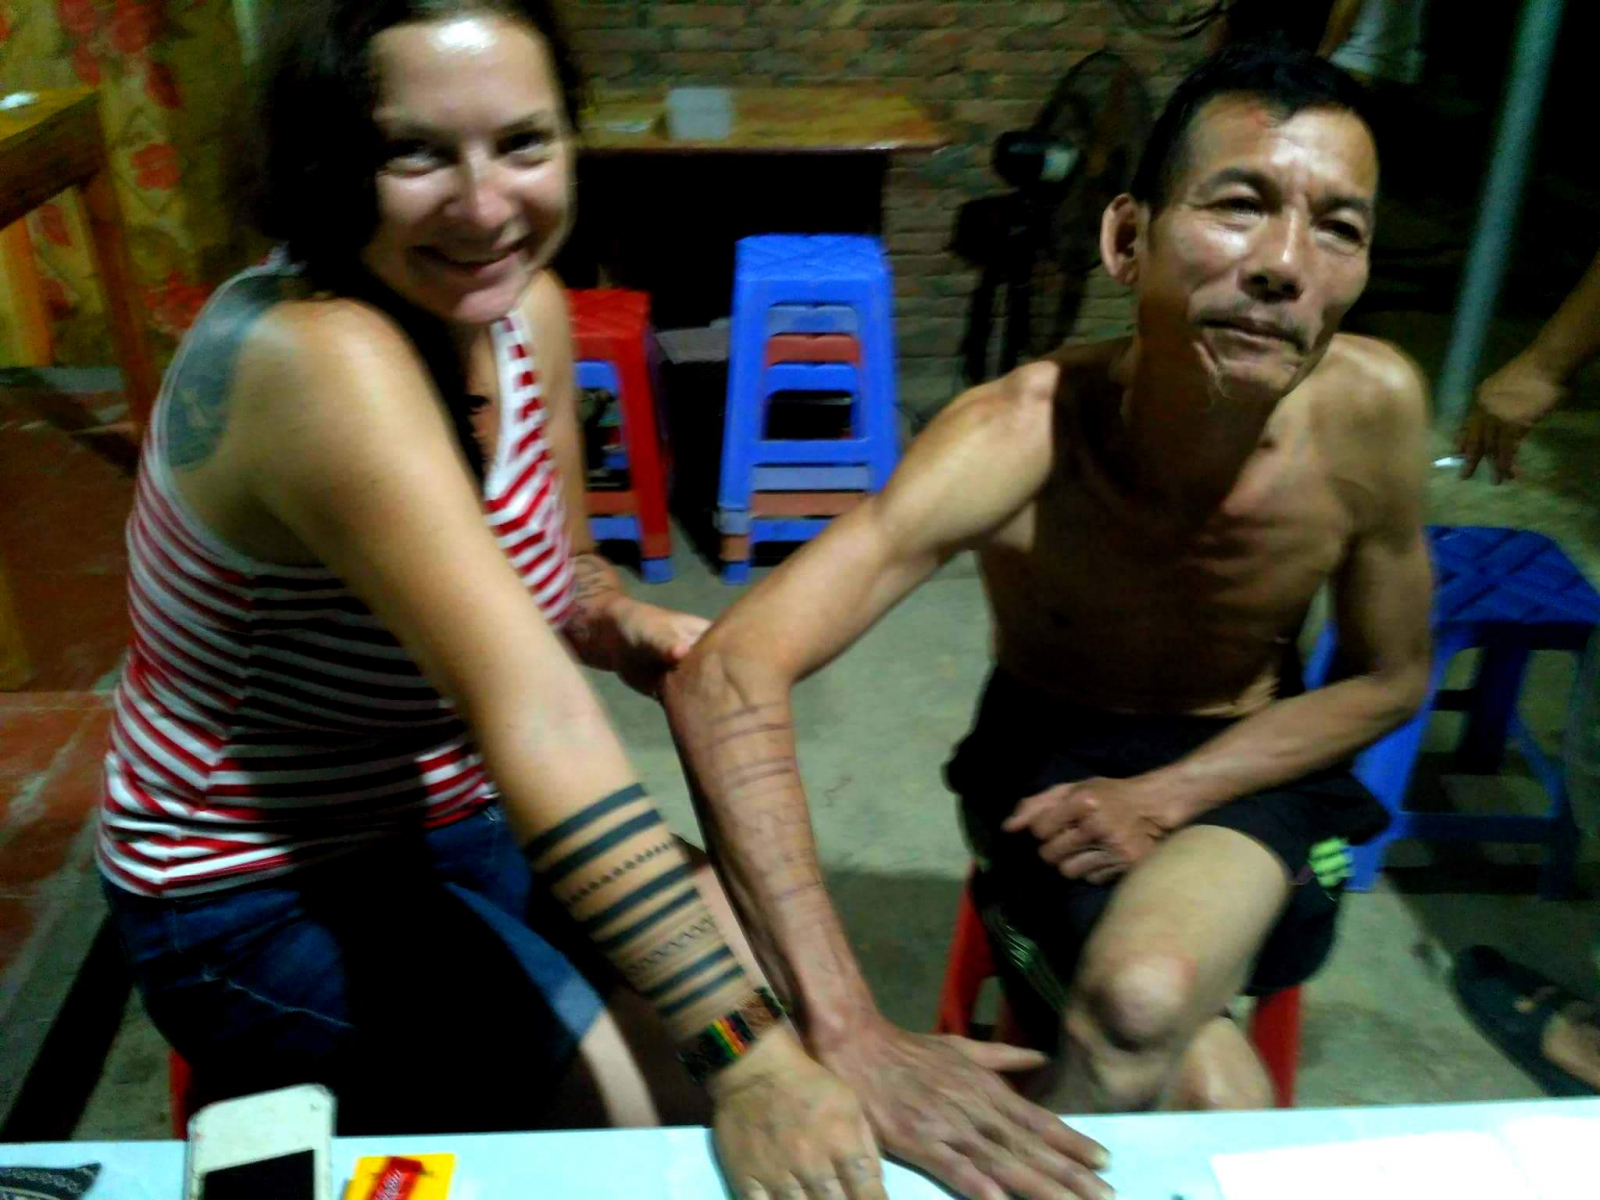 Záviděl mi tetování, tak si ho prostě nakreslil :-) Yen Binh, Vietnam